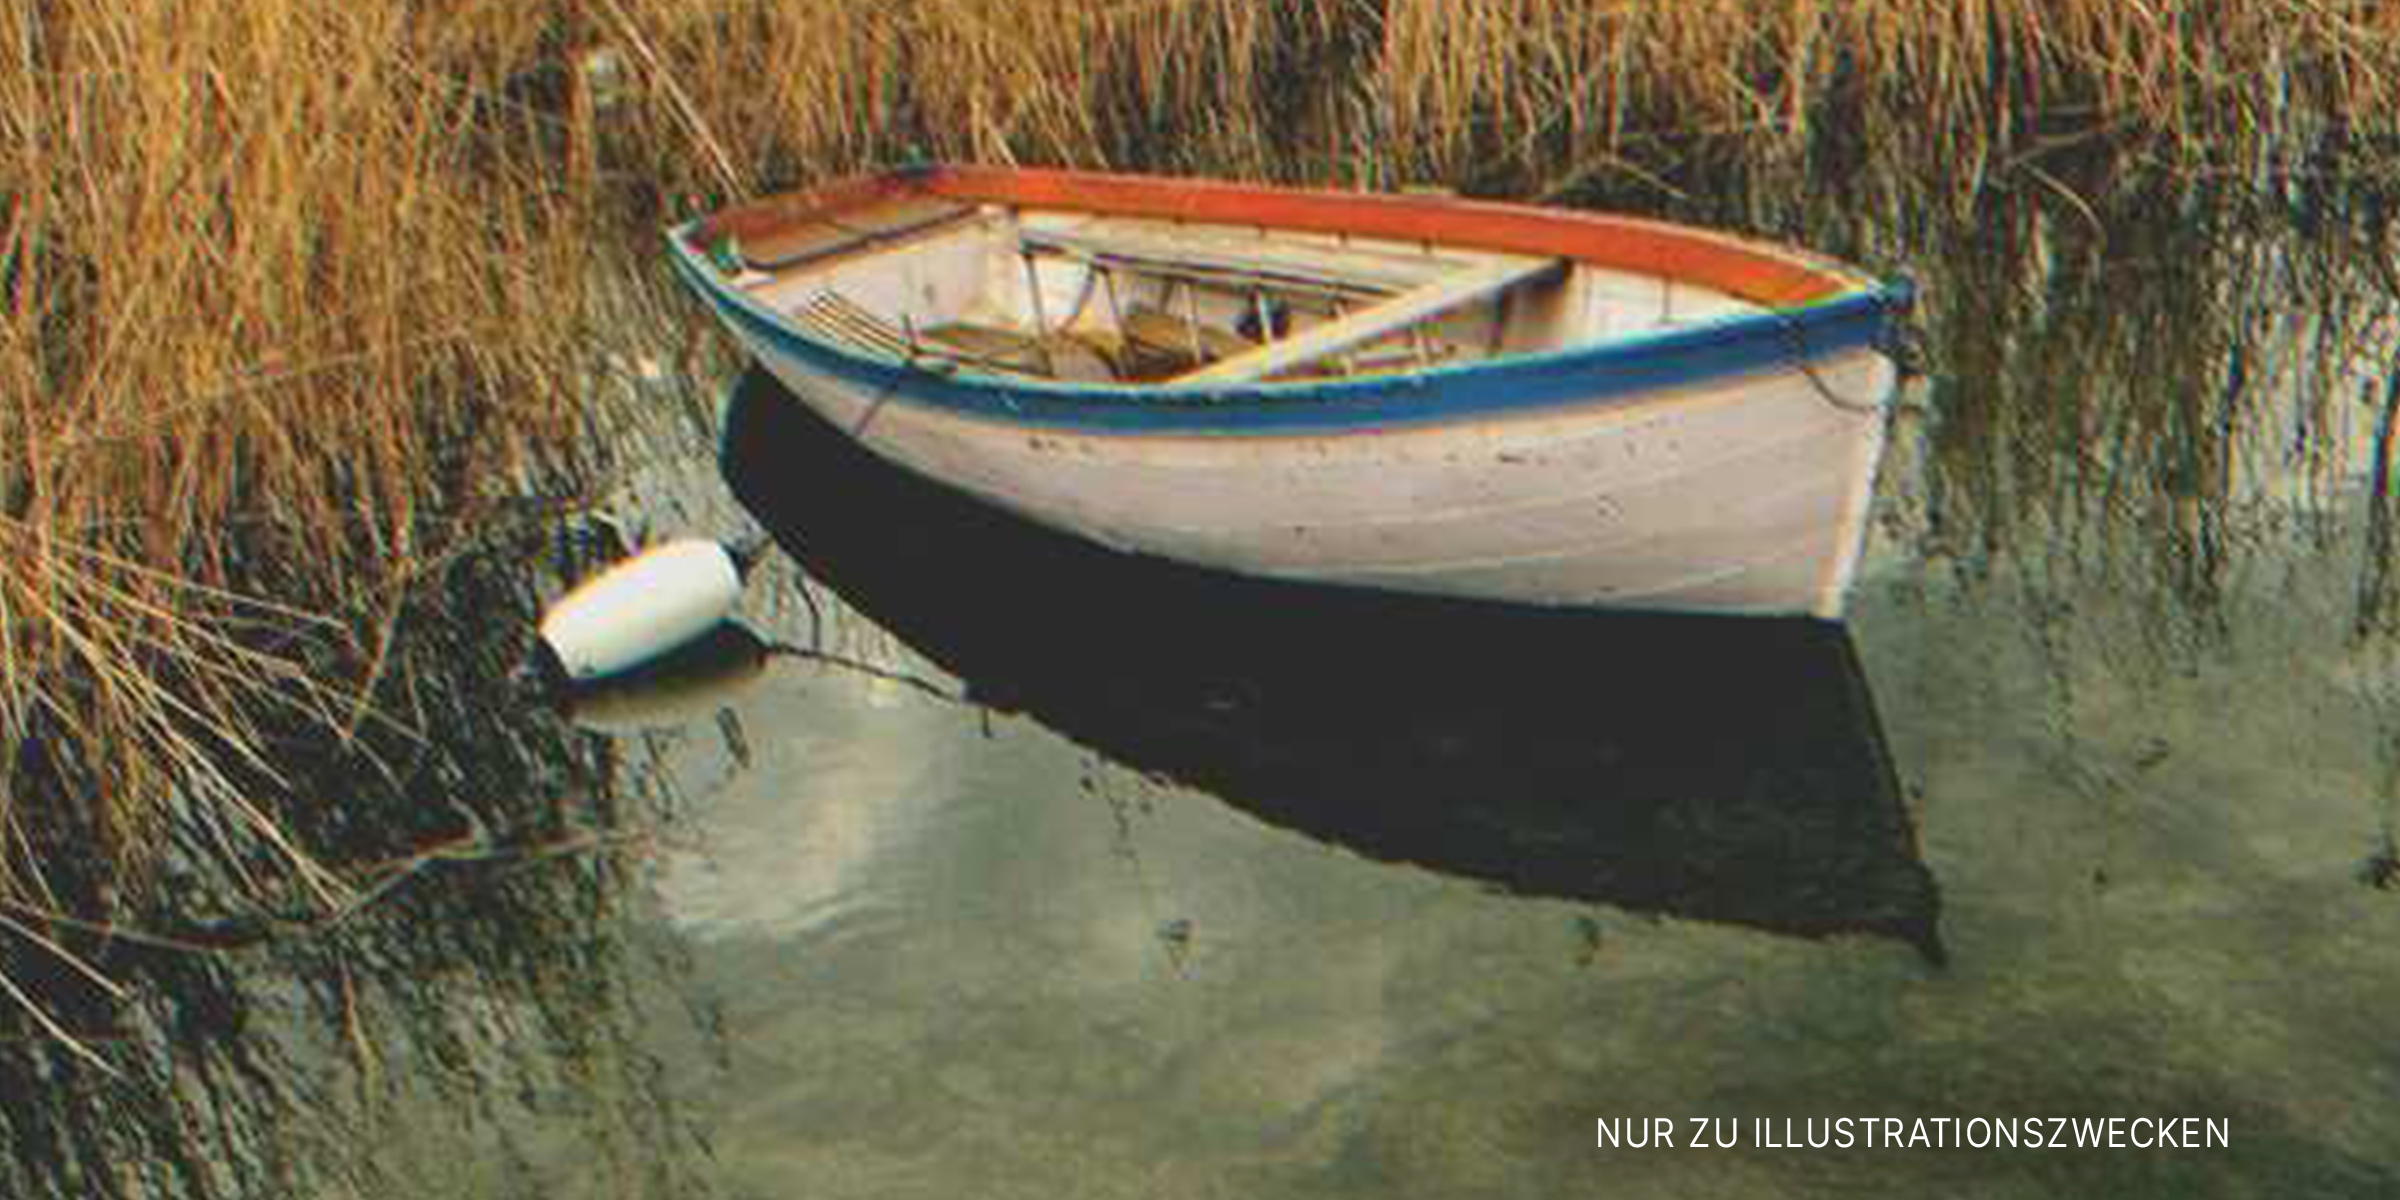 Ein Boot schwimmt auf dem Wasser. | Quelle: Shutterstock